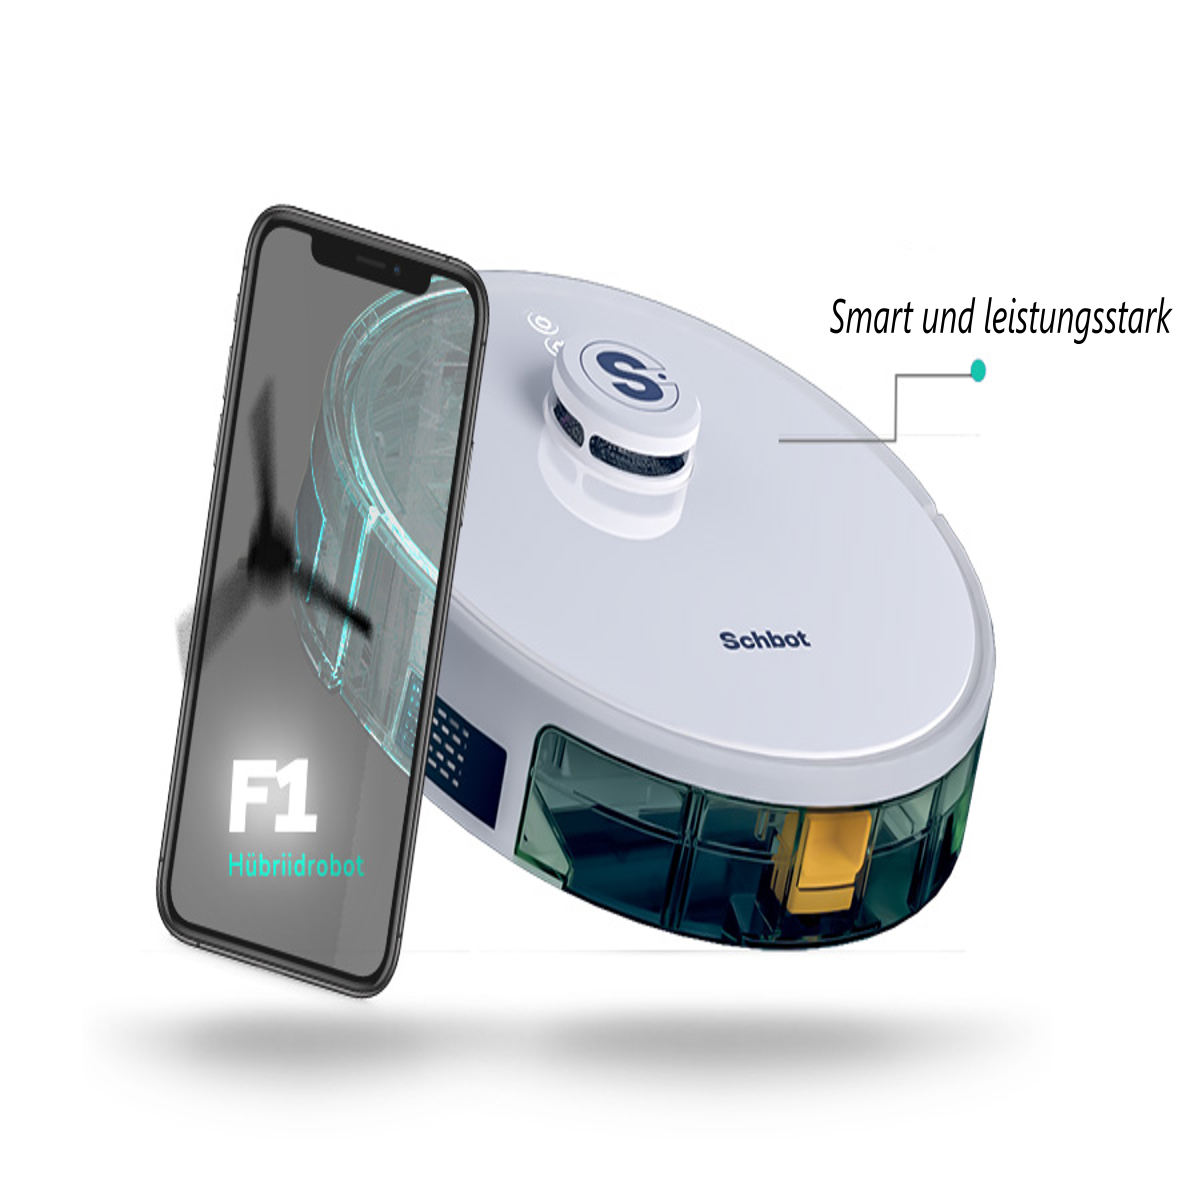 F1-Weiß und connection App Saugroboter mit Wischfunktion Roboterstaubsauger SCHBOT